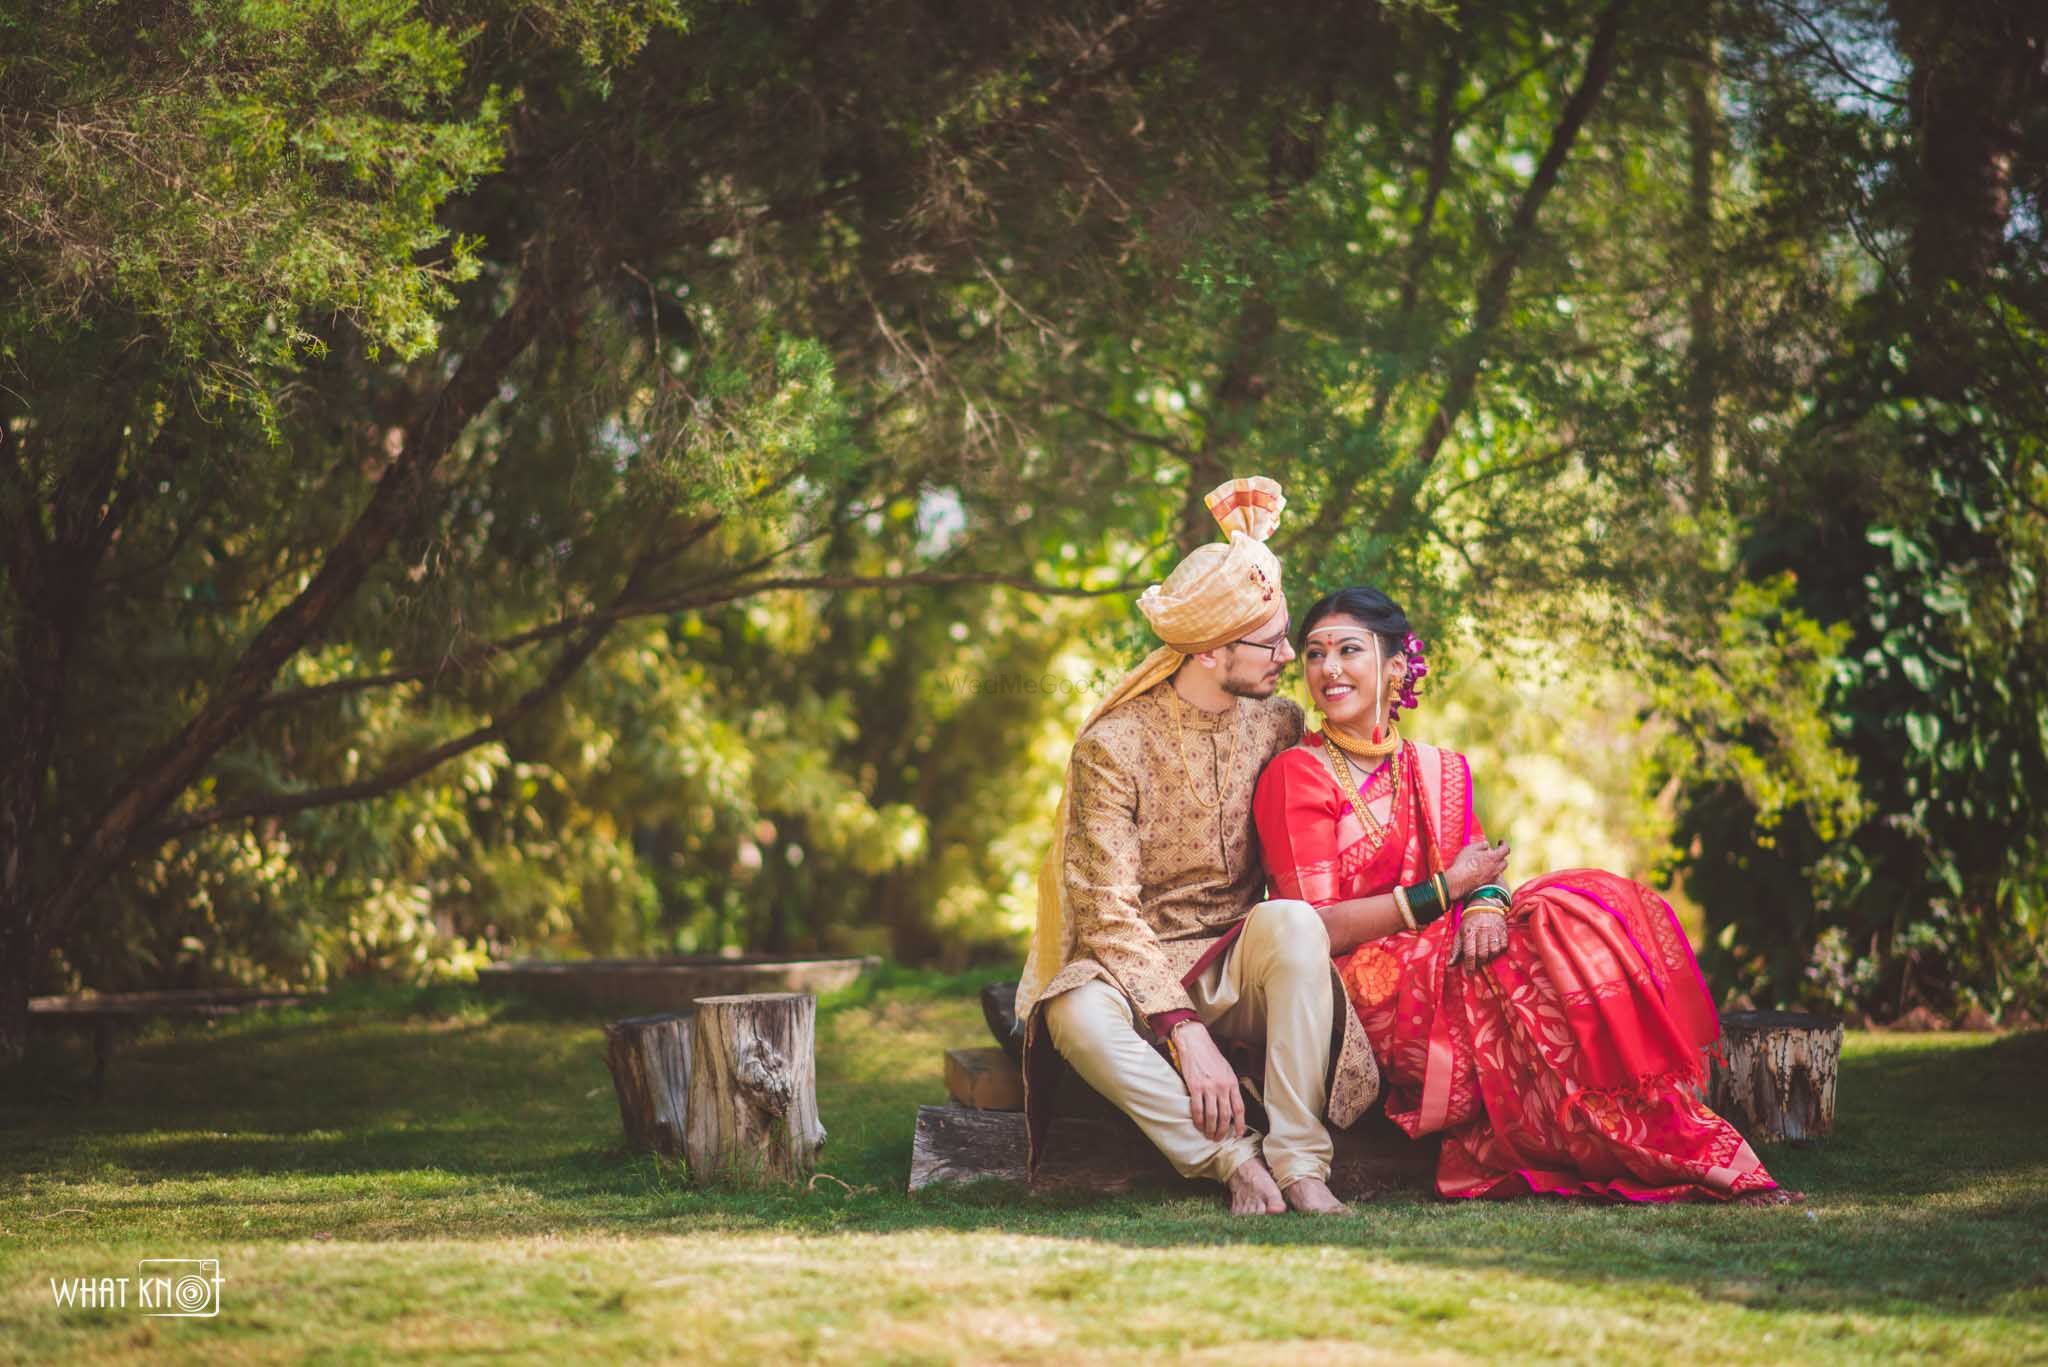 40+ Stylish Maharashtrian Bridal Looks That We Have A Crush On! | Wedding  couple poses, Wedding couple poses photography, Indian bride photography  poses